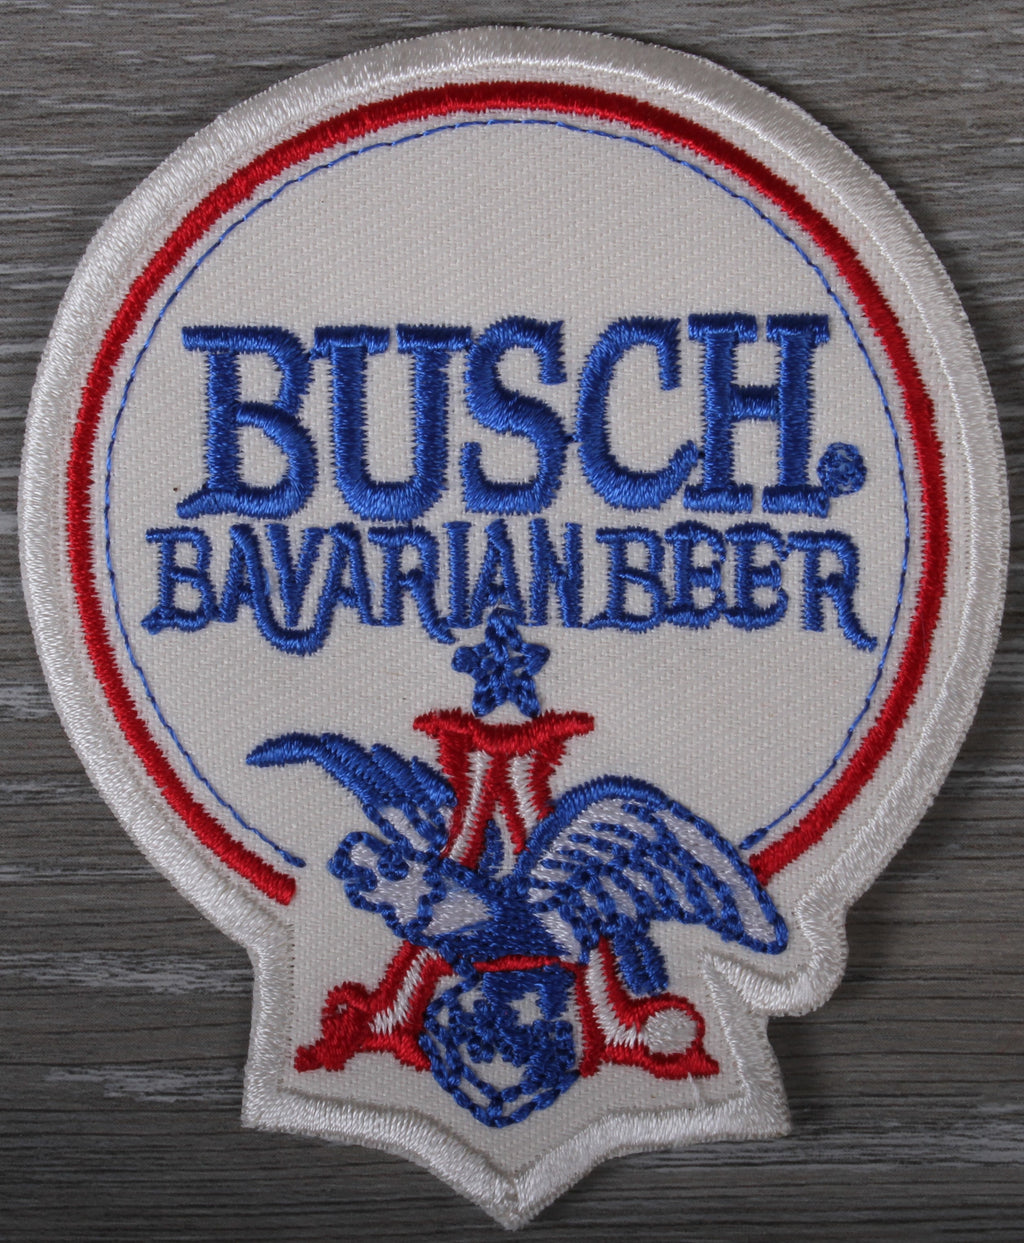 Vintage Busch Bavarian Beer Patch